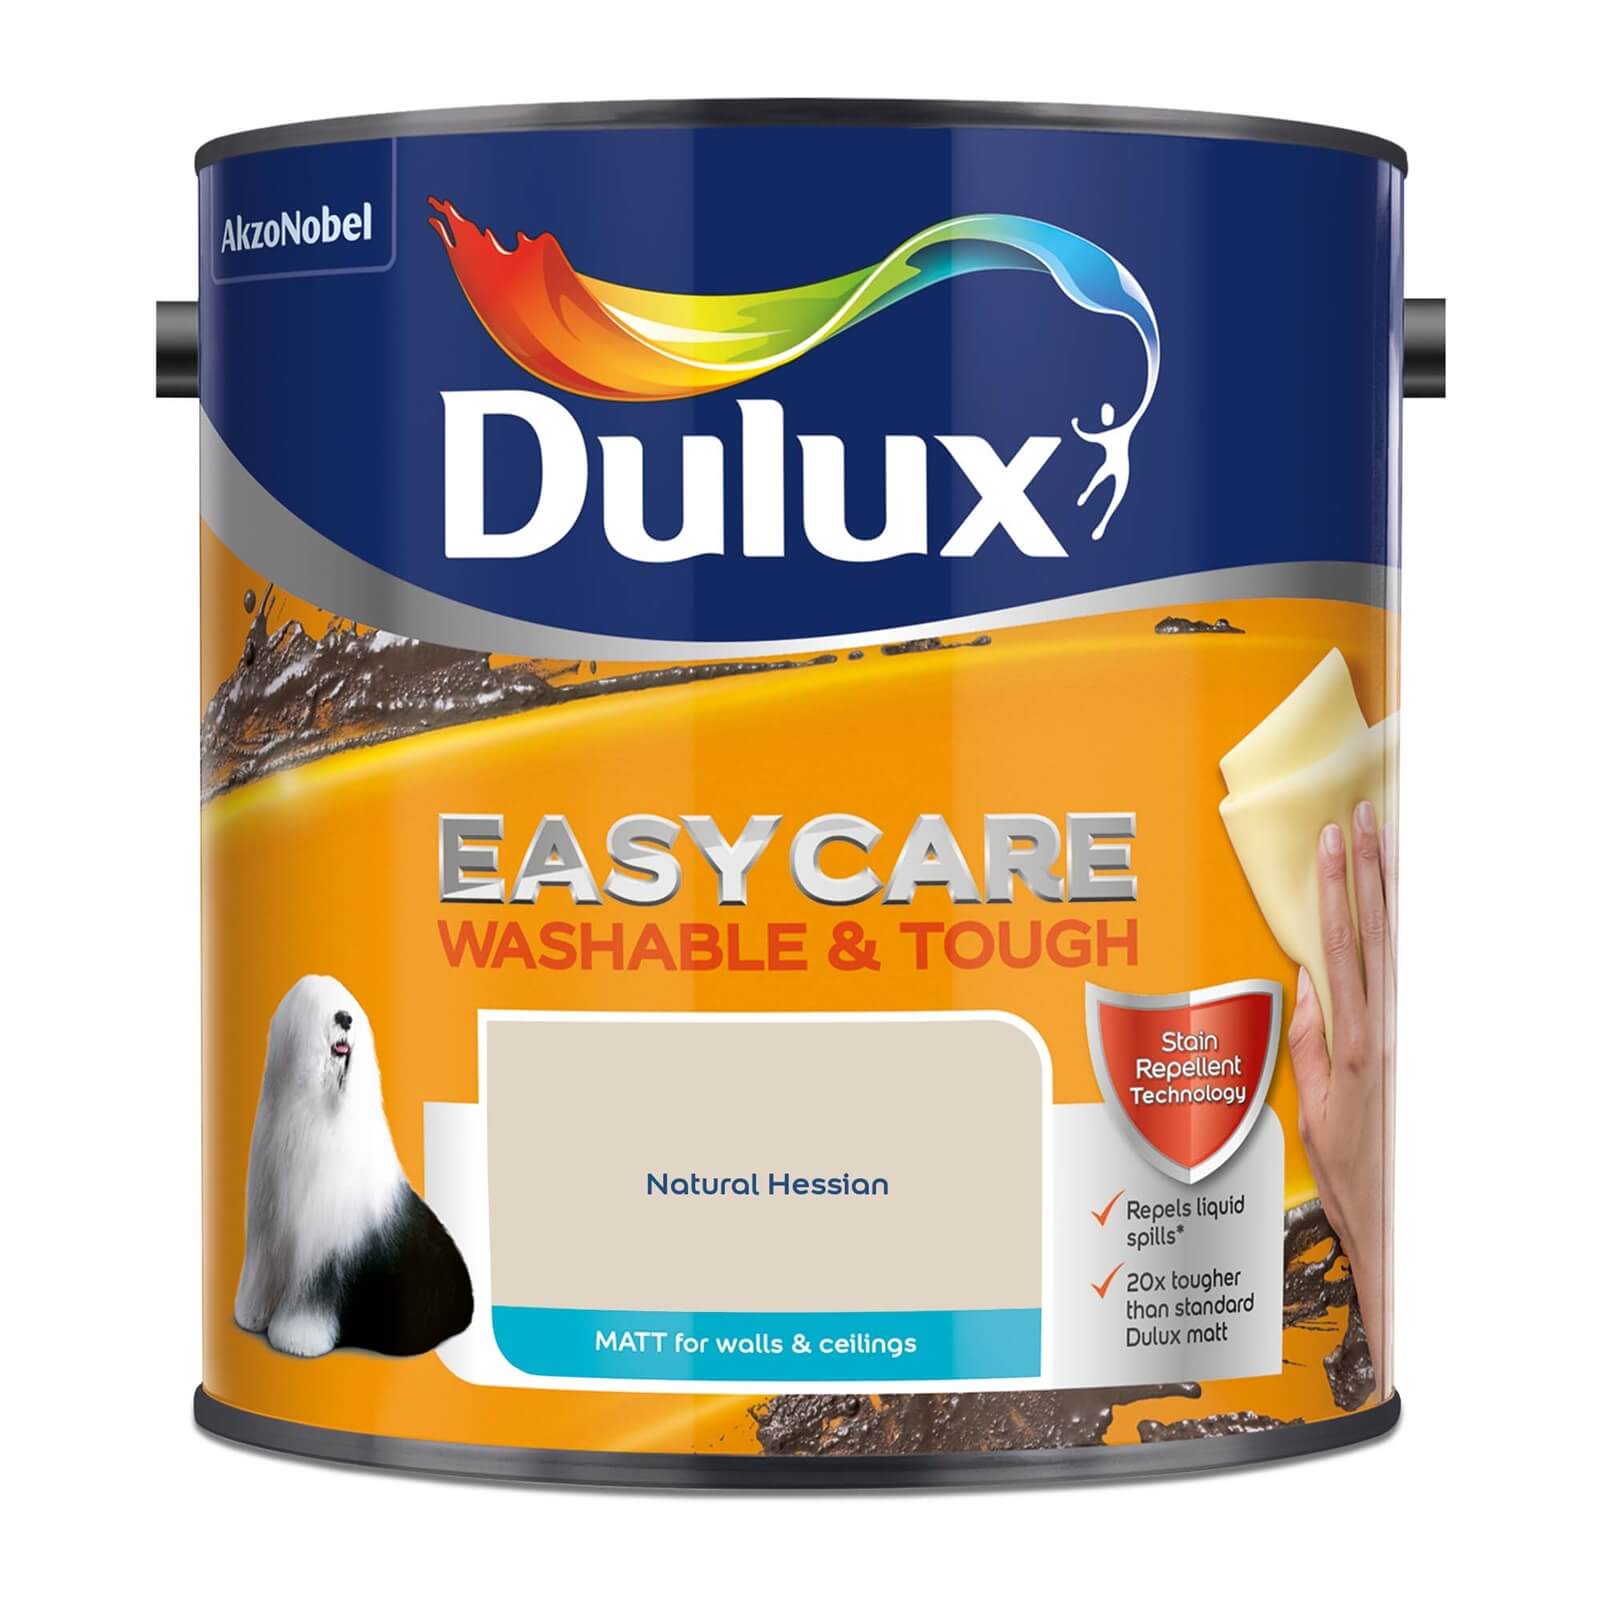 Dulux Easycare Washable & Tough Matt Paint Natural Hessian - 2.5L